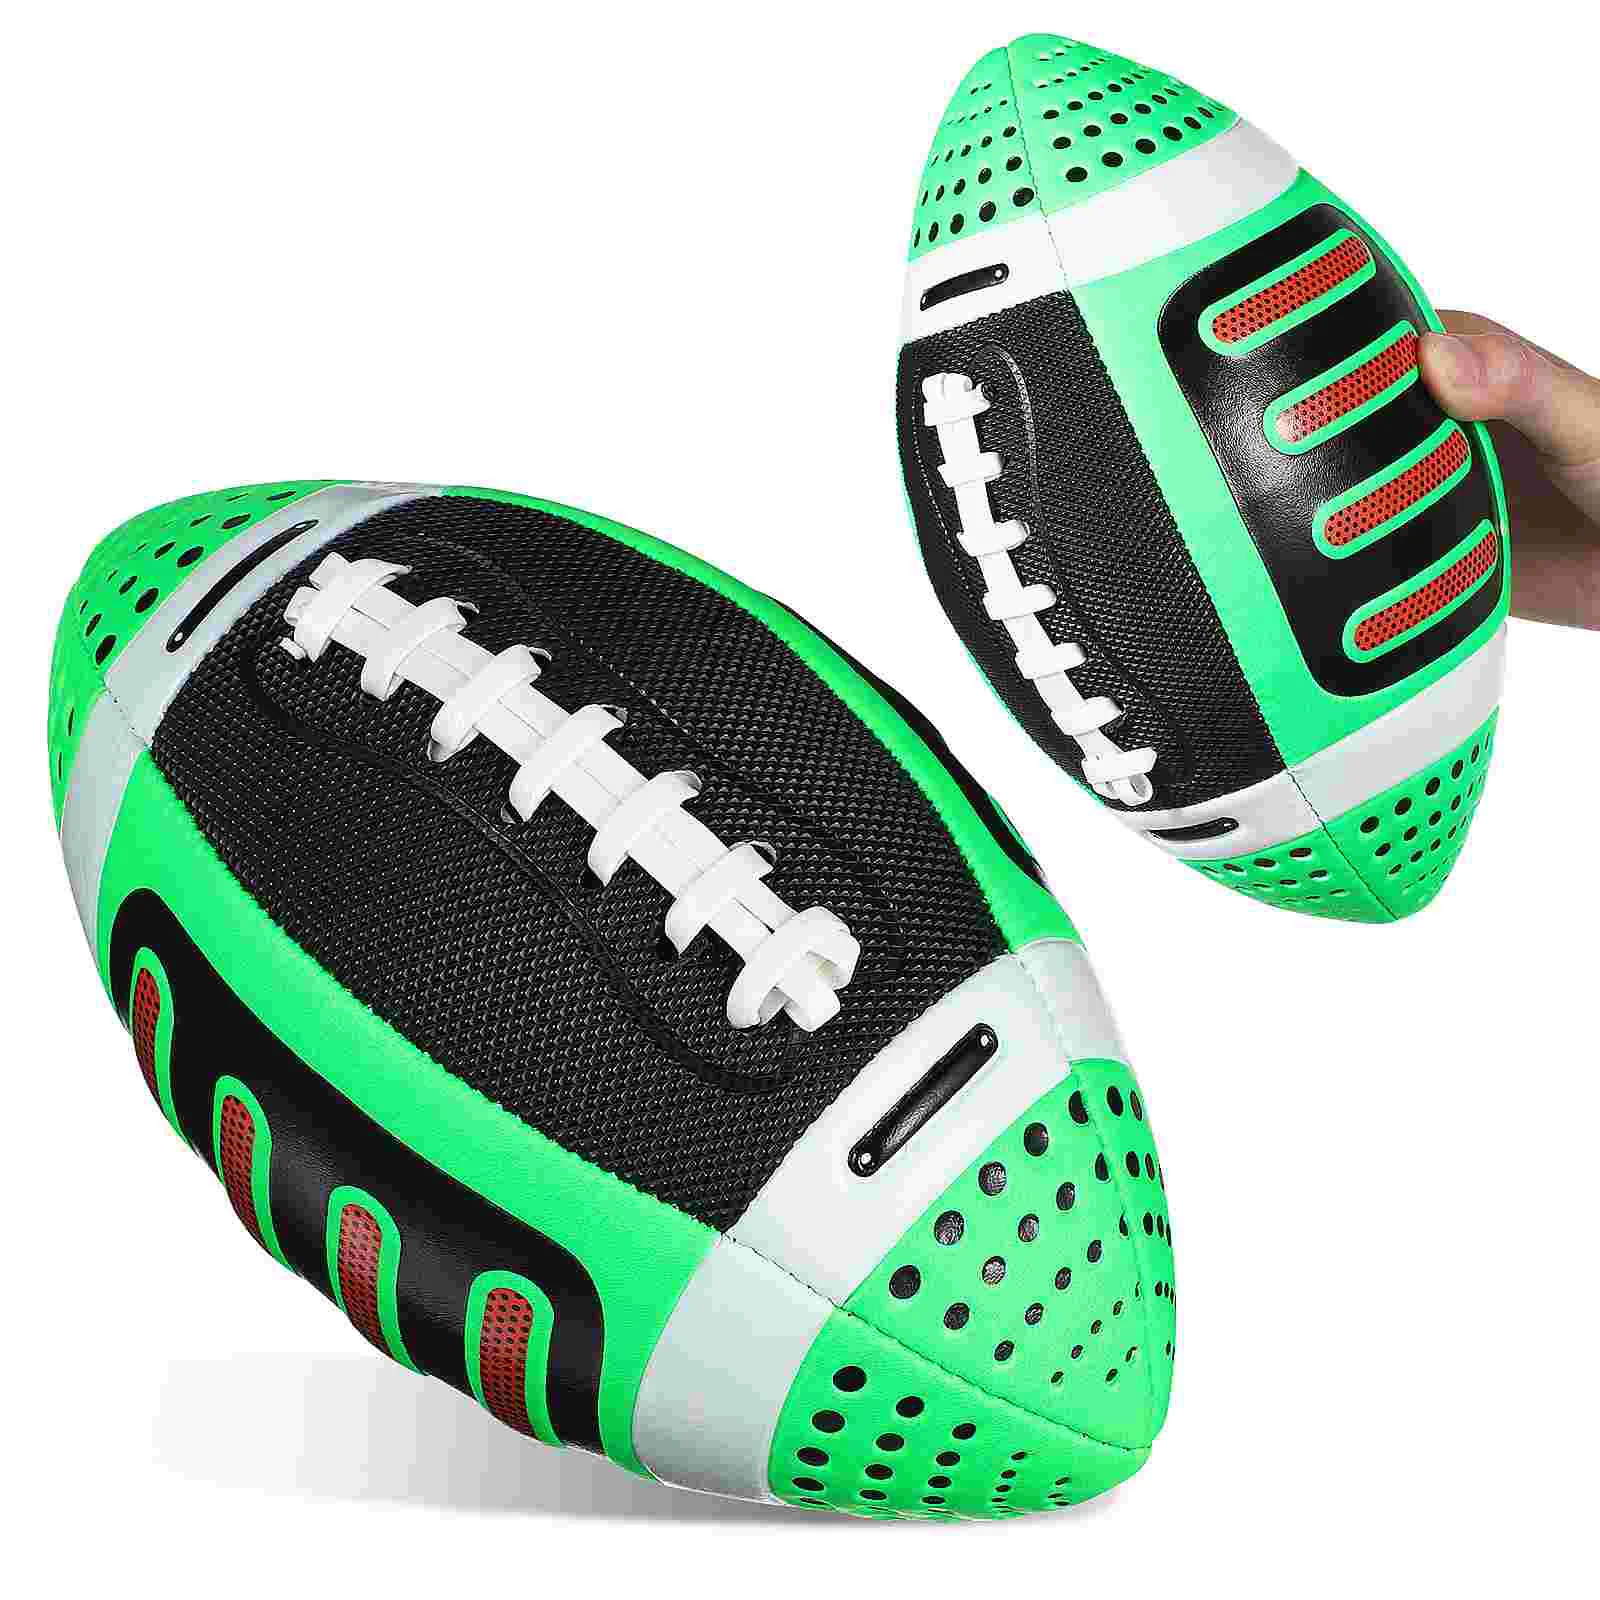 

Мяч для регби на открытом воздухе, детский аксессуар для футбола, тренировочный спорт, продукт молодежного размера